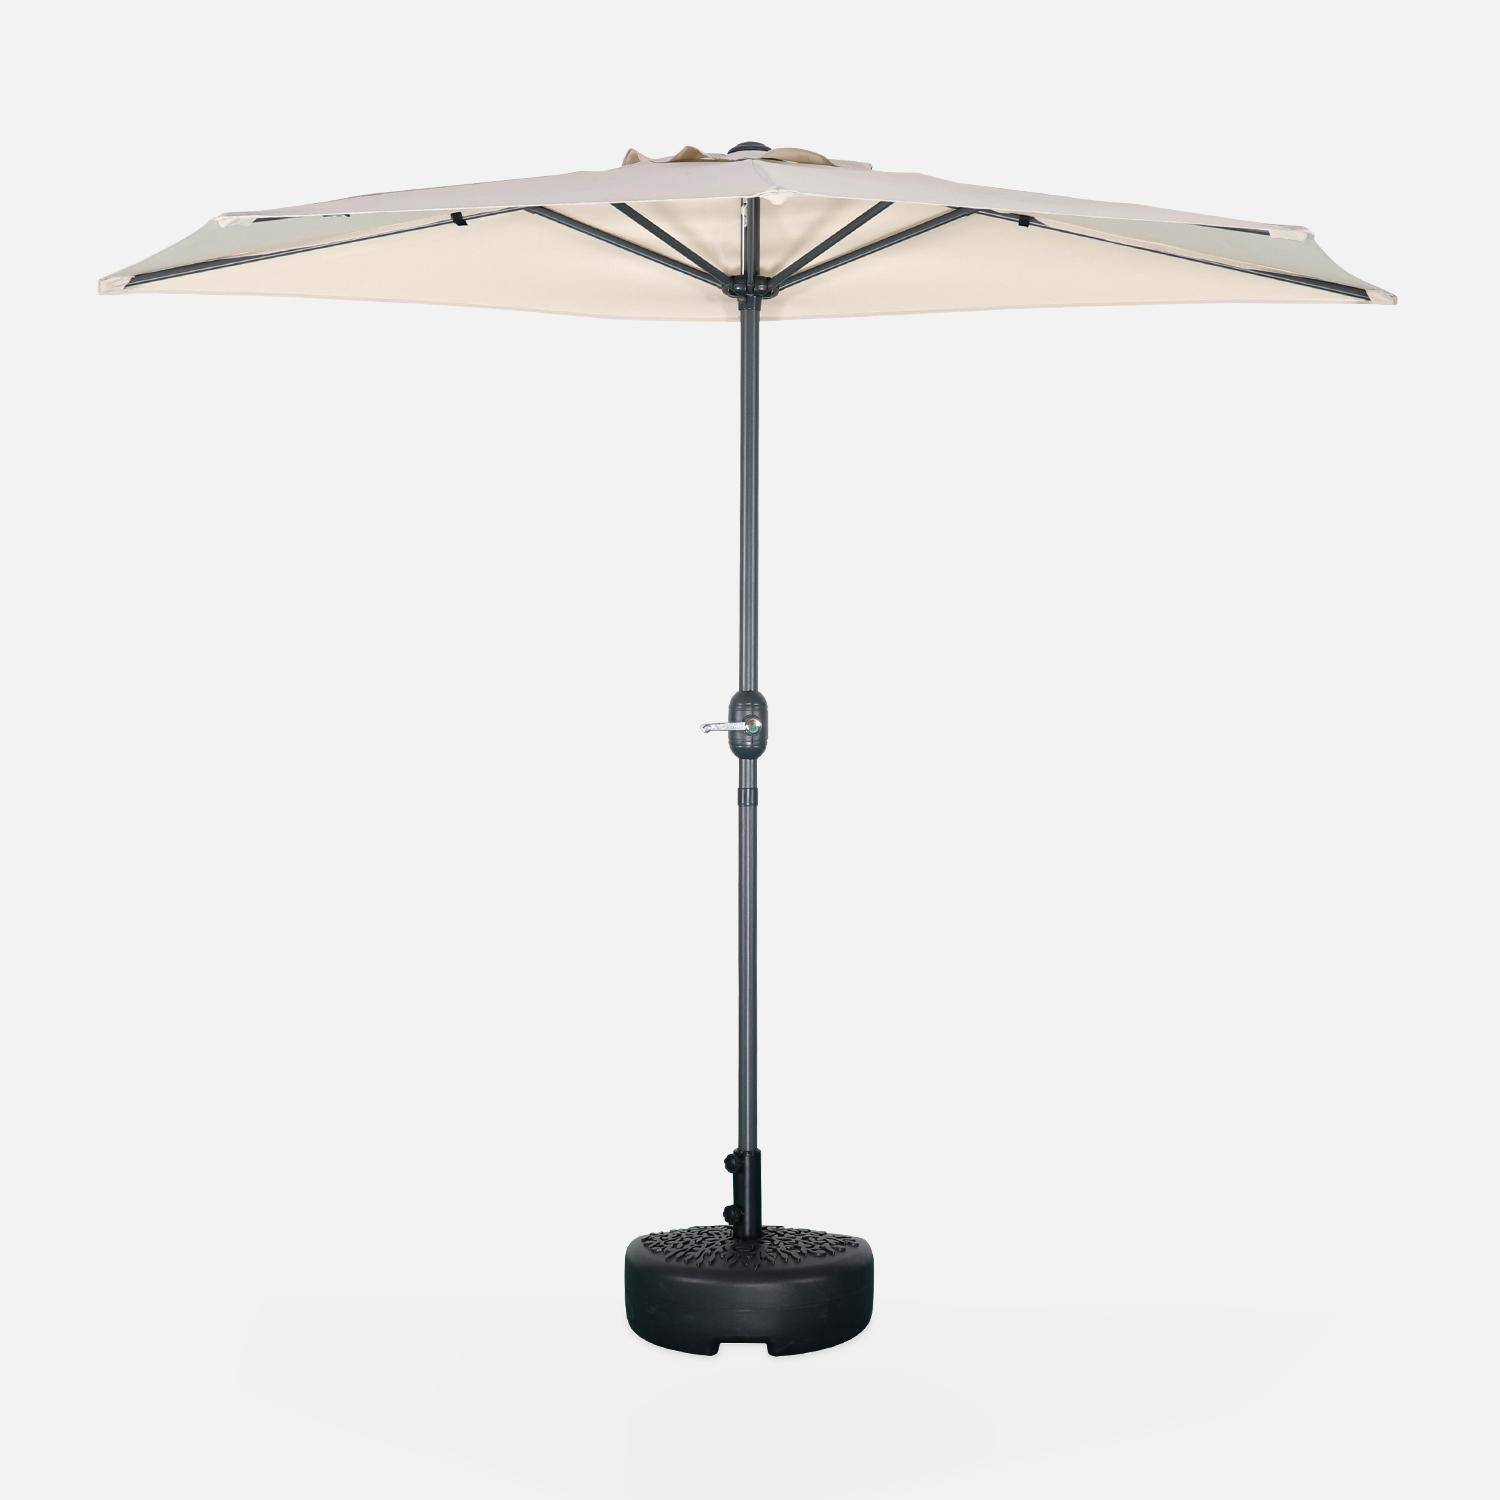  Parasol para balcón Ø250cm - CALVI - Medio parasol recto, mástil de aluminio con manivela, tejido arena,sweeek,Photo3